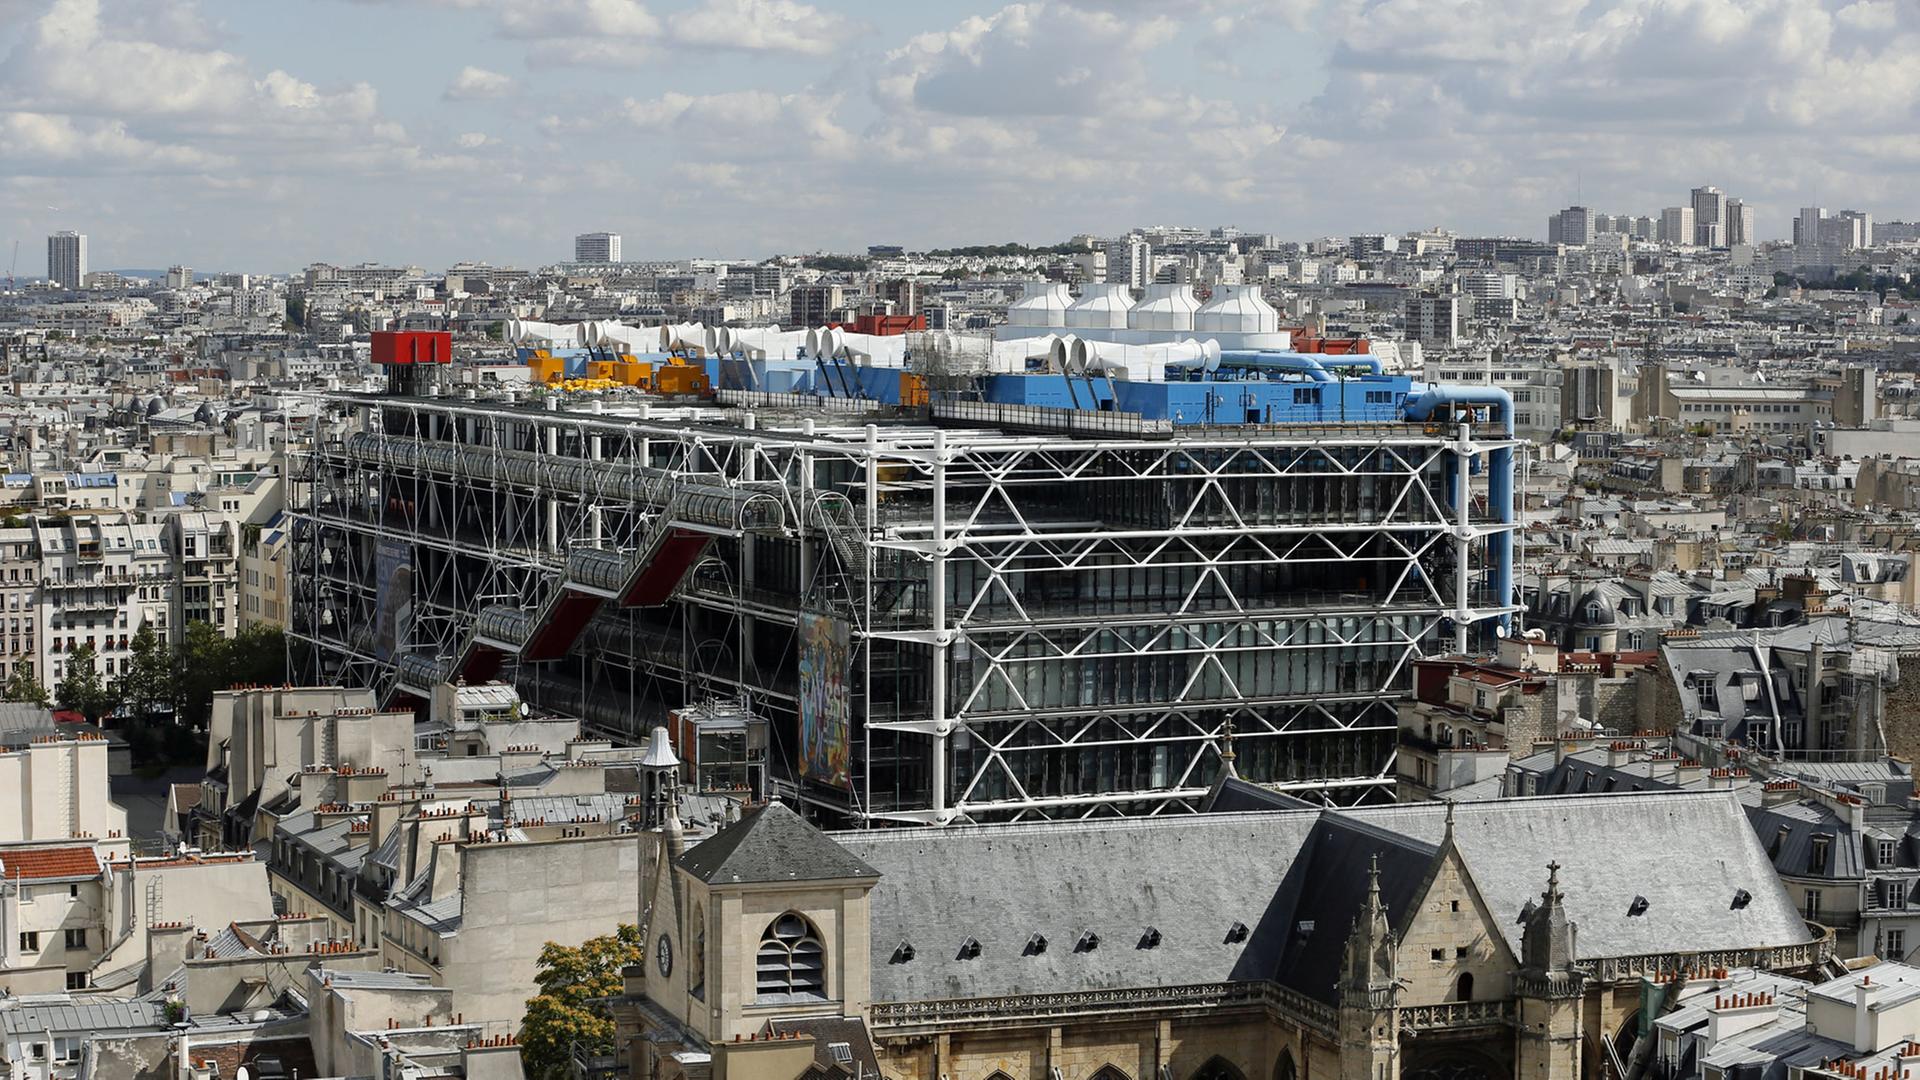 Das Kunst- und Kulturzentrum Centre Pompidou in Paris, aufgenommen am 21.8.2014 vom Tour Saint Jacques